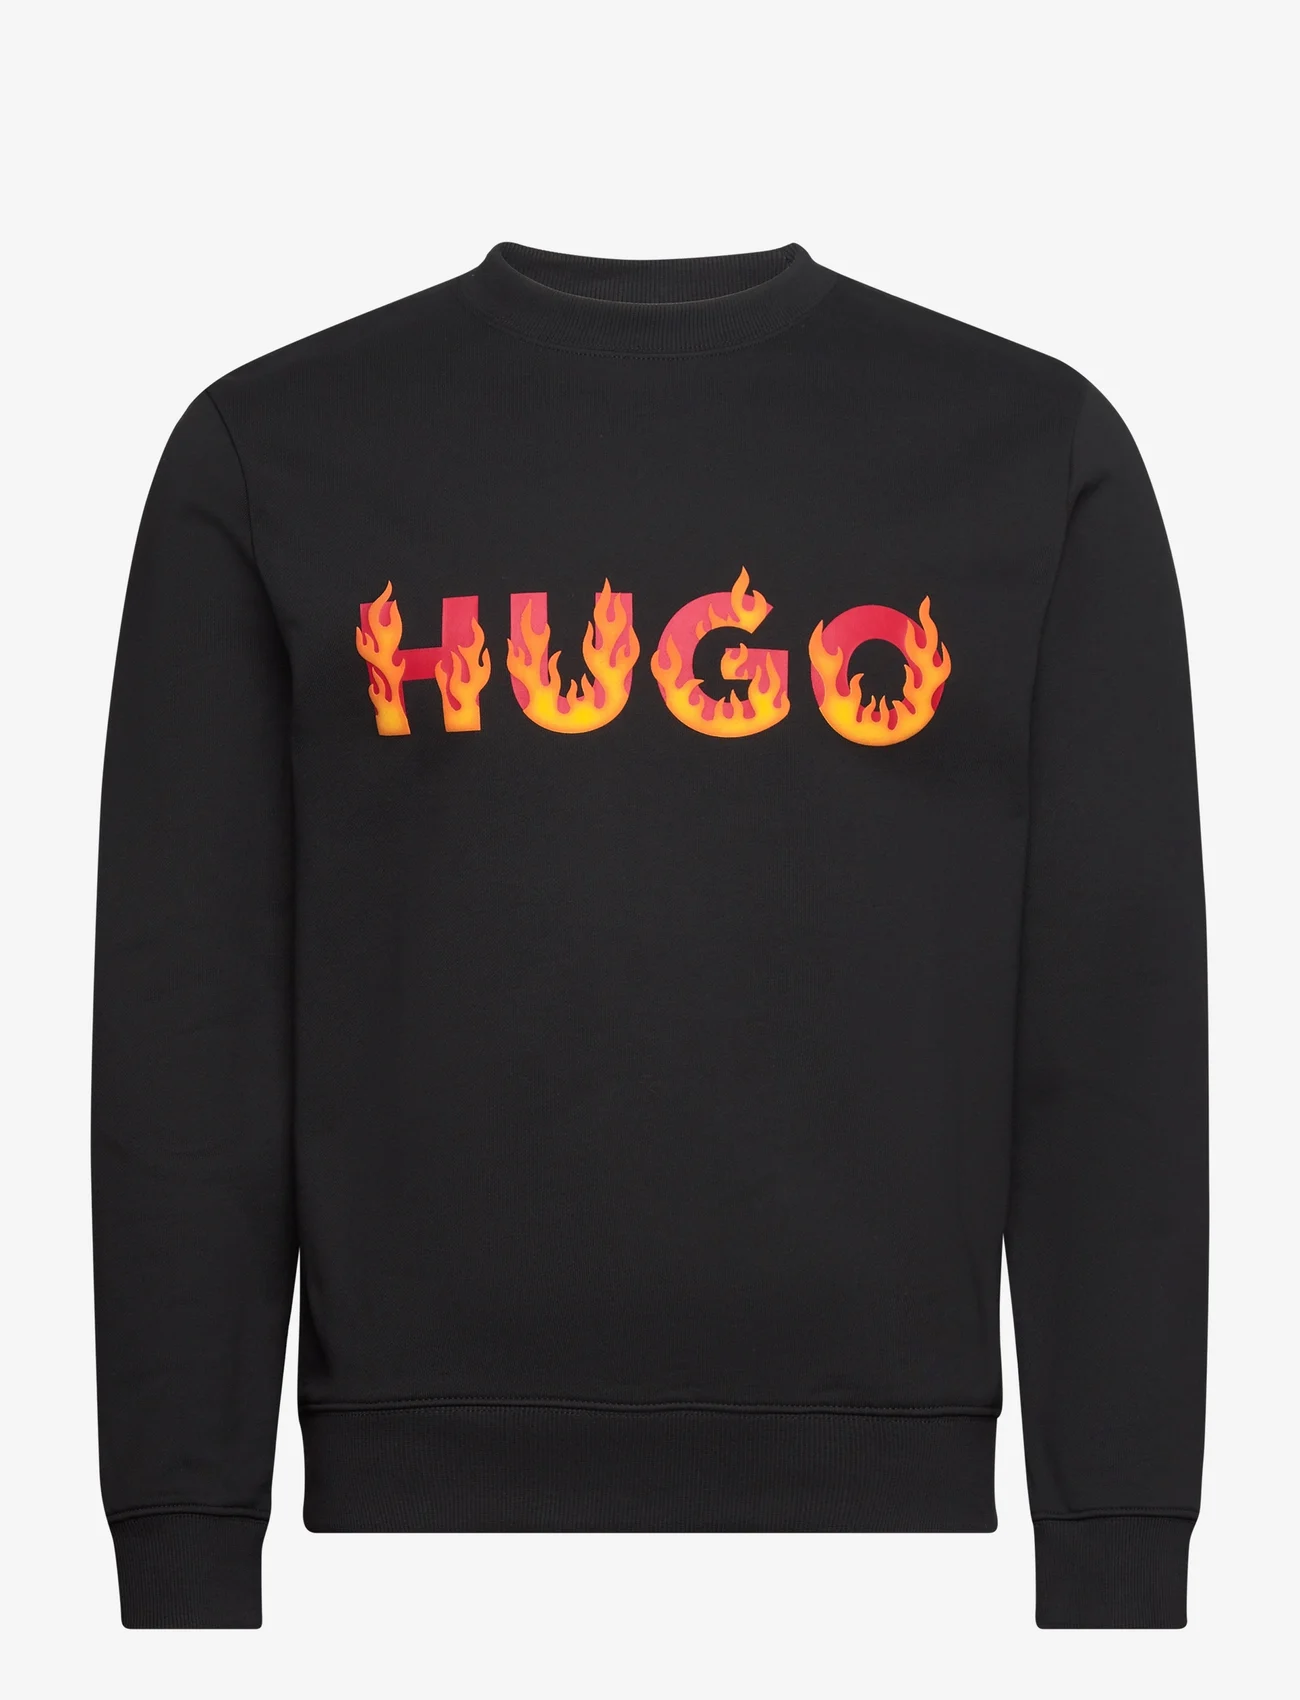 HUGO - Ditmo - clothing - black - 0